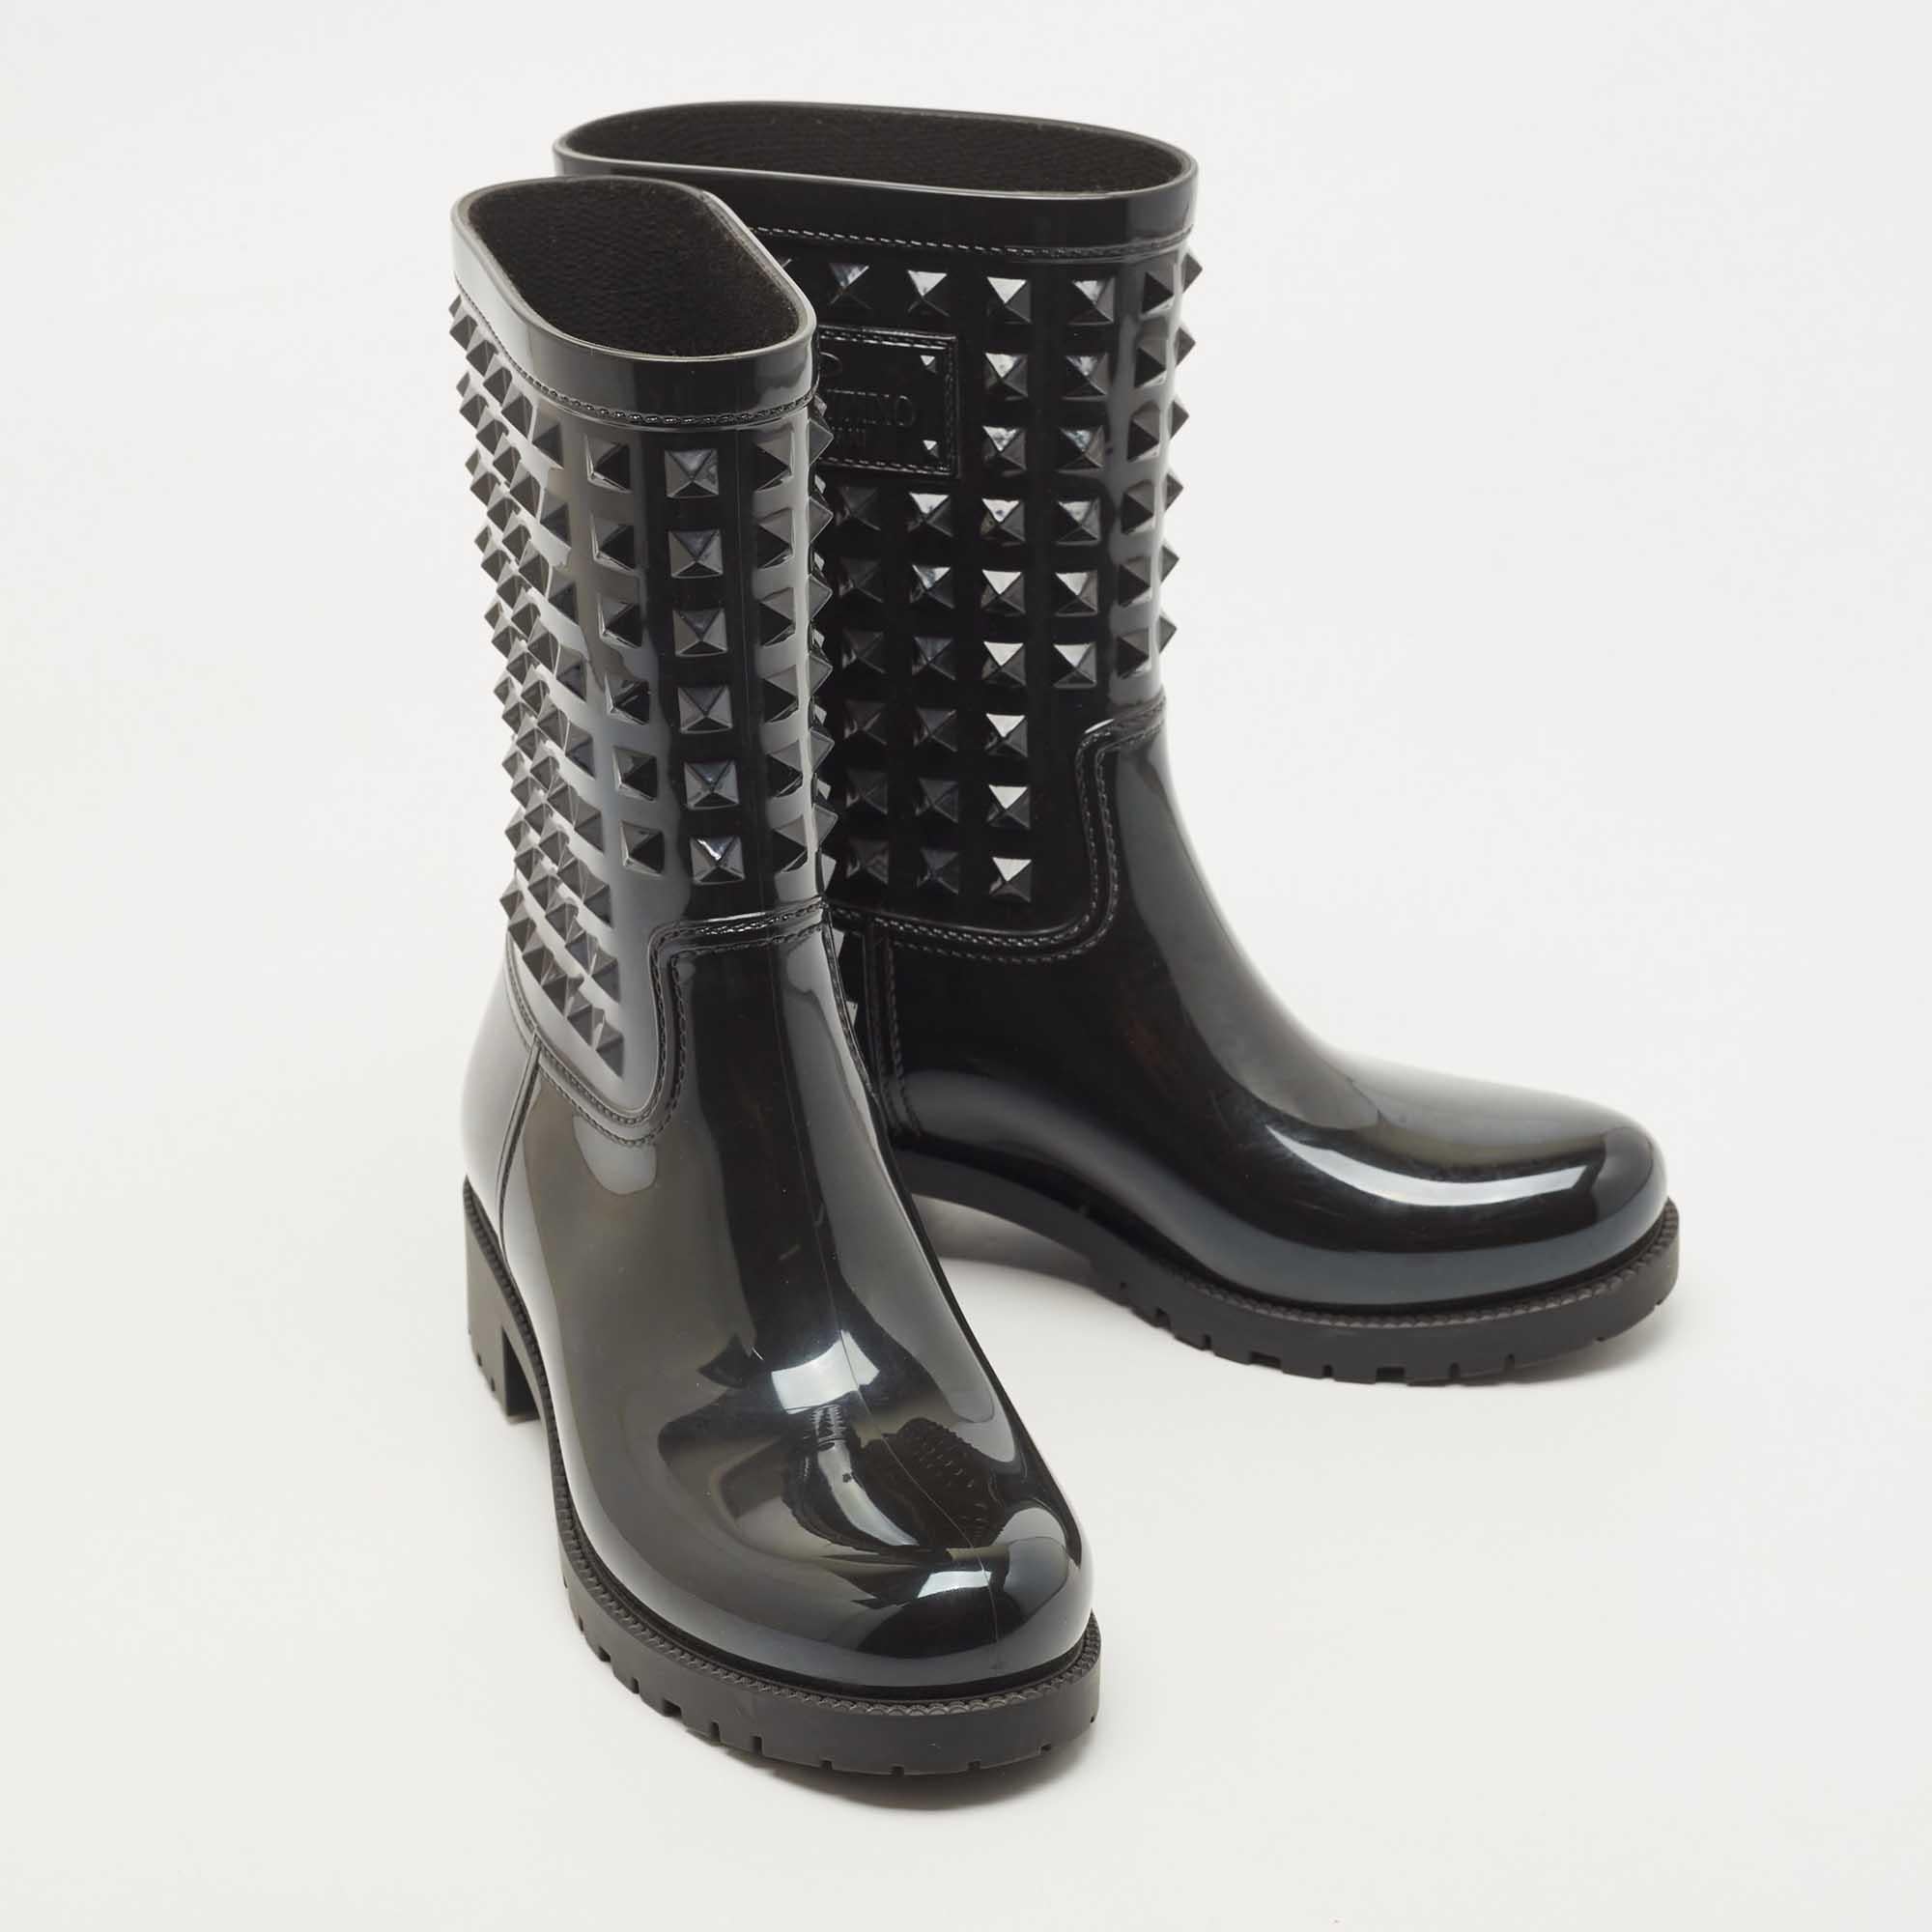 Louis Vuitton Black Rubber Studded Rain Boots Size 38 1